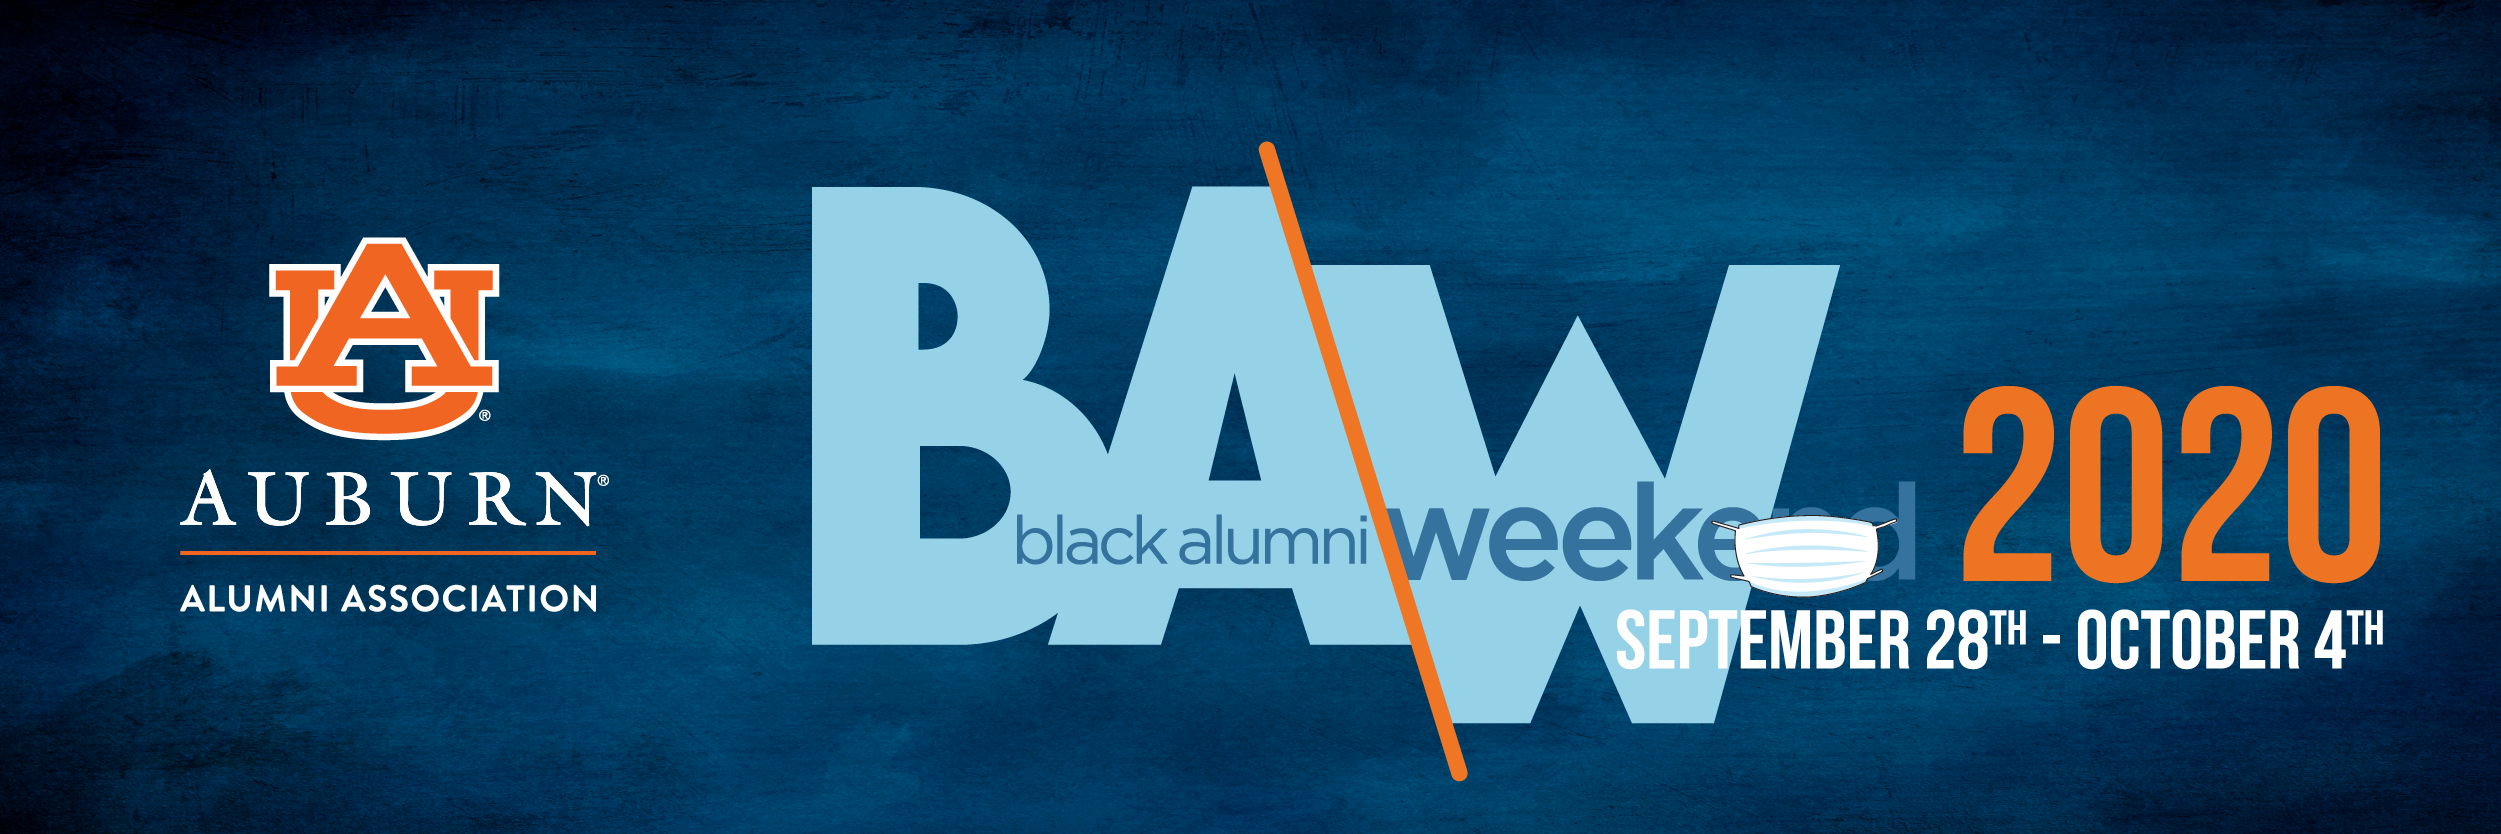 Be part of Virtual Black Alumni Week 2020